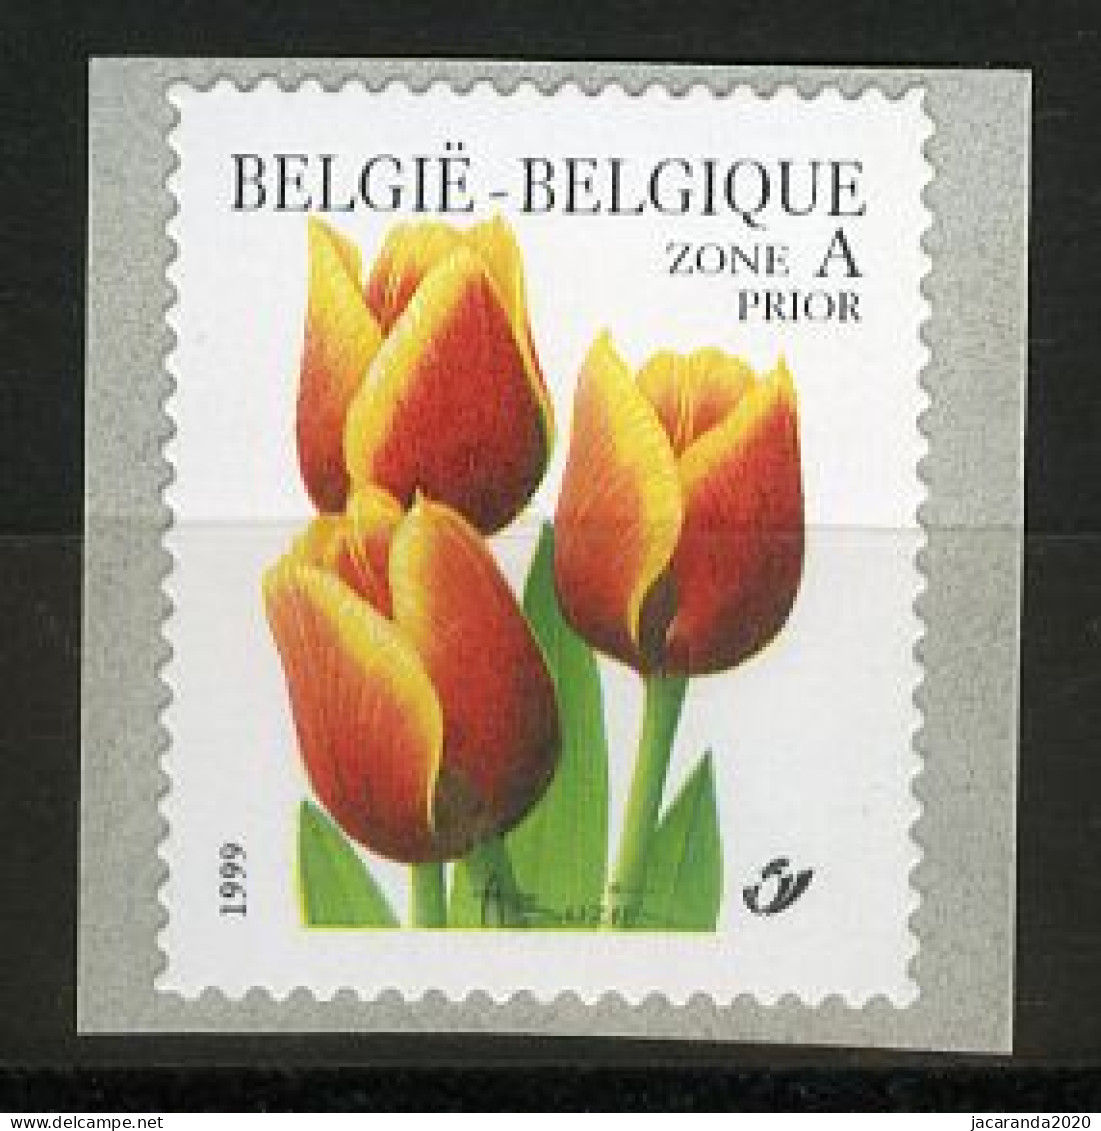 België R92 - Bloemen - André Buzin (2855) - Tulp - Rolzegel - Timbre Rouleau - Franqueo